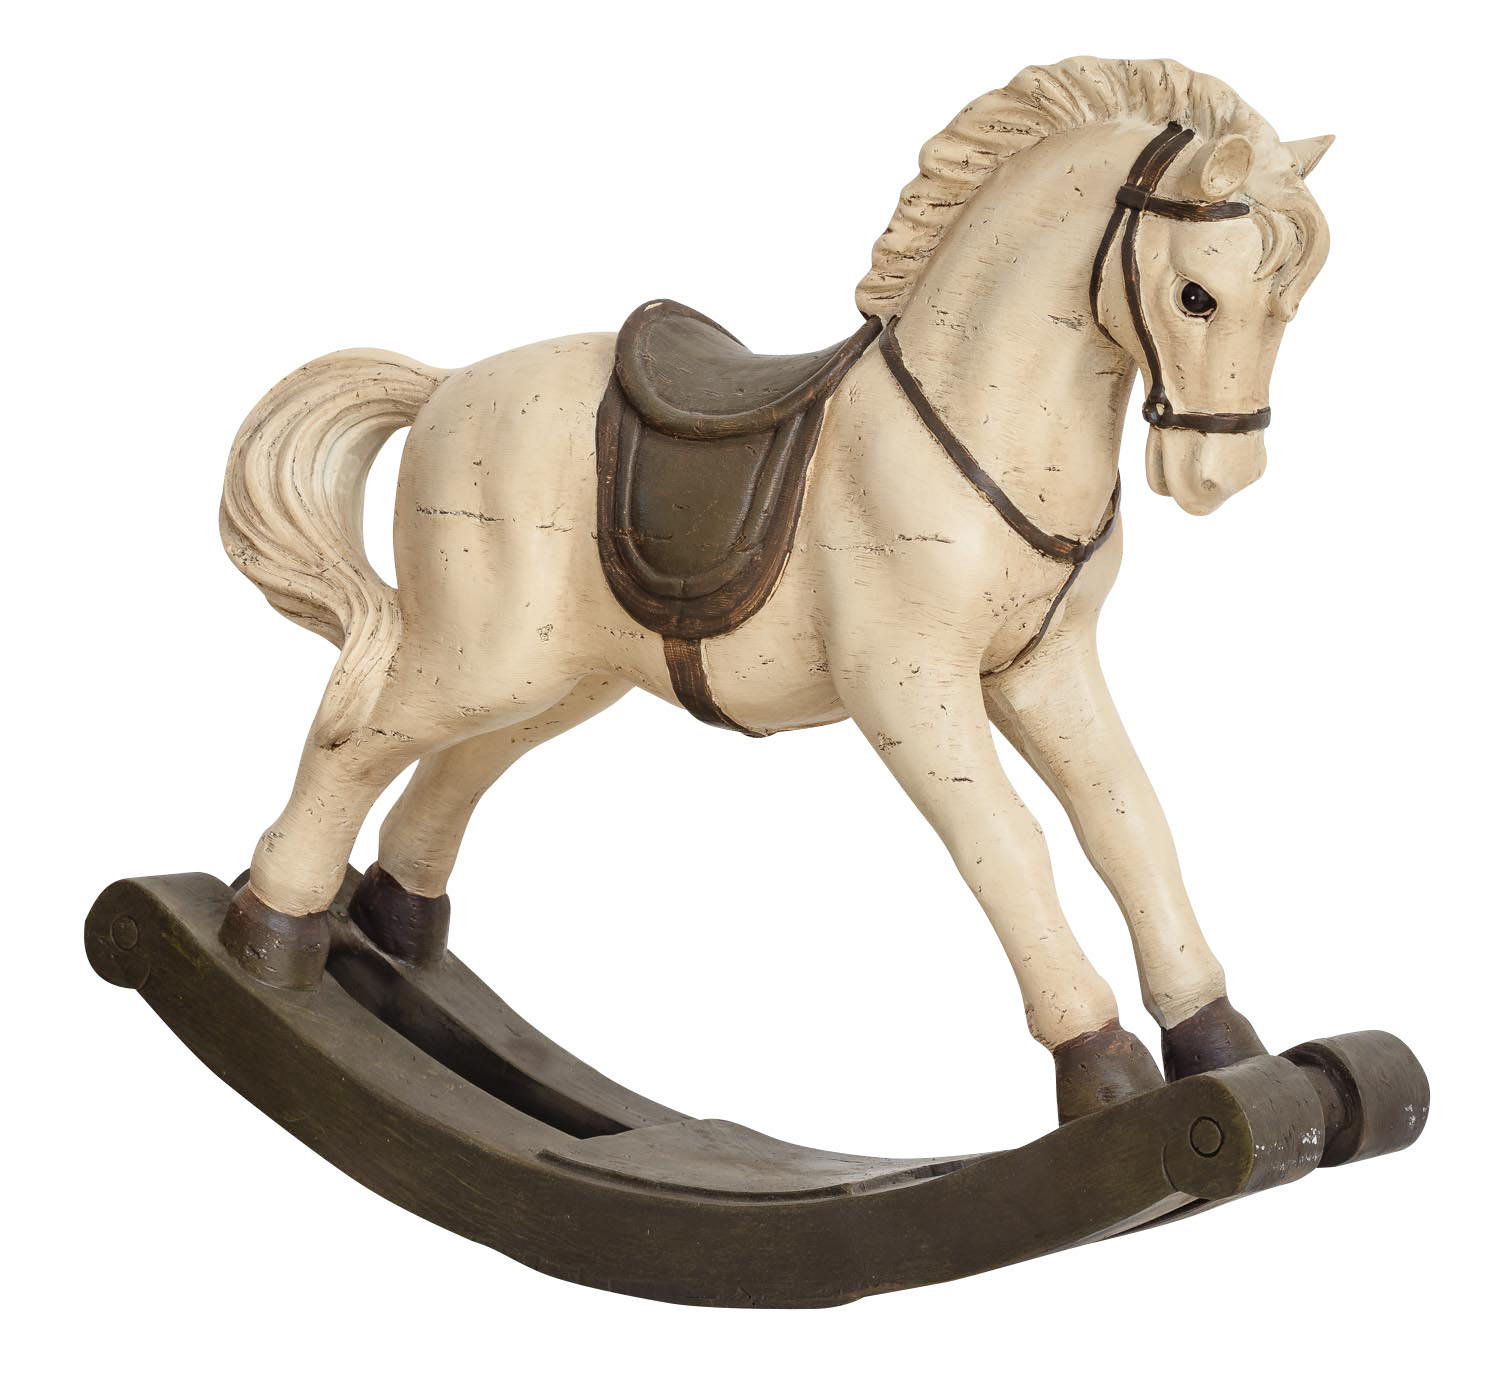 Maak plaats Hoes spion Hobbelpaard 38cm sculptuur paard figuur decoratie antieke stijl | Nederland